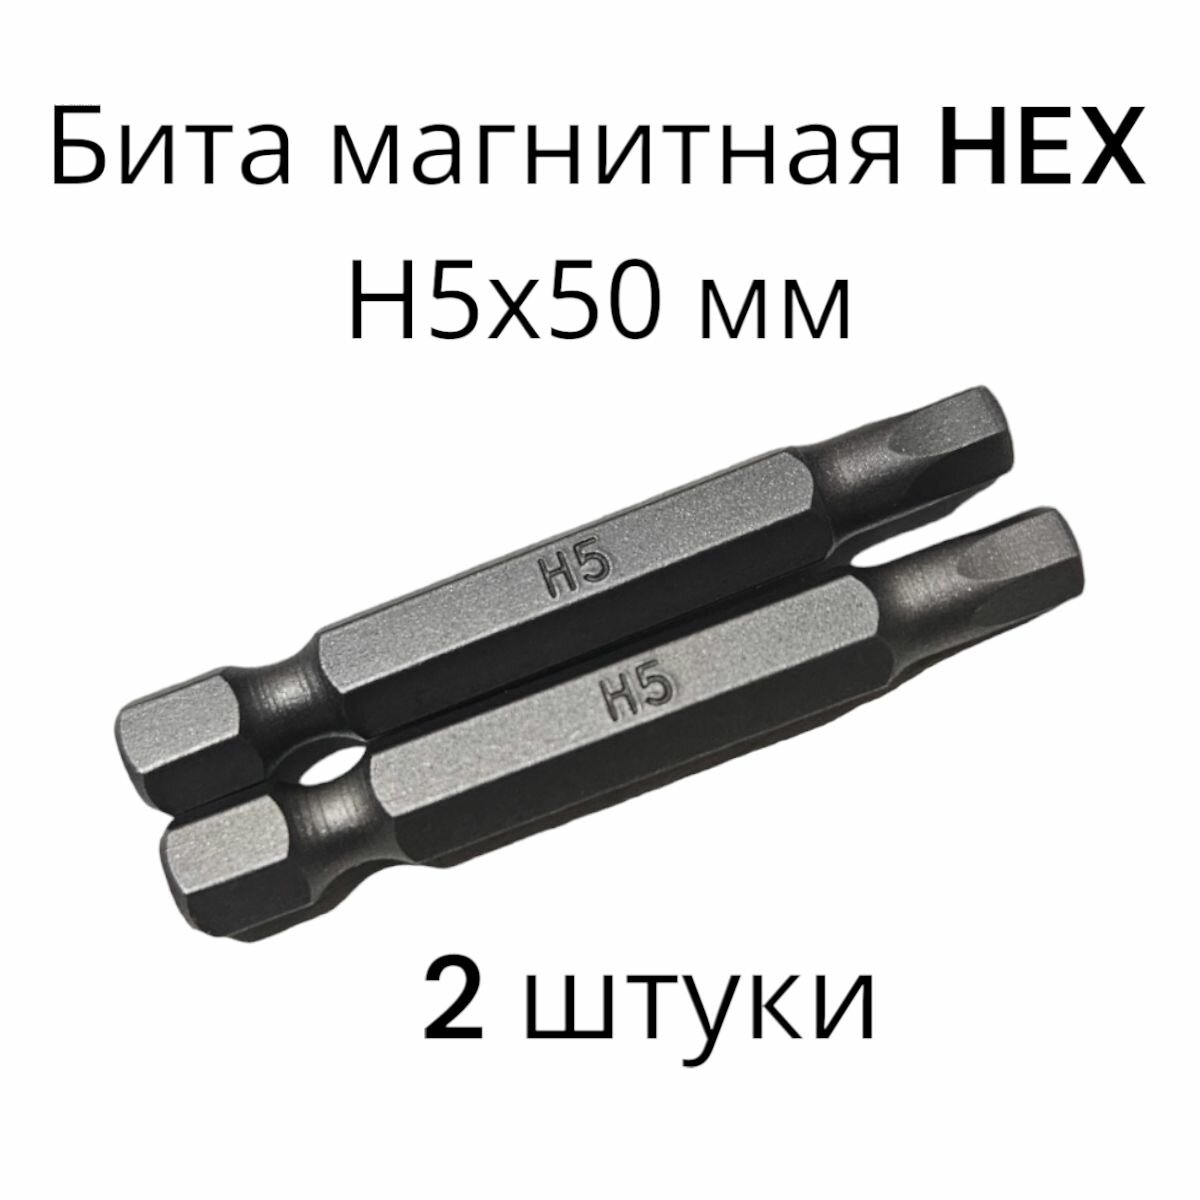 Биты магнитные HEX H5х50мм 2 штуки / биты для шуруповертов 50 мм